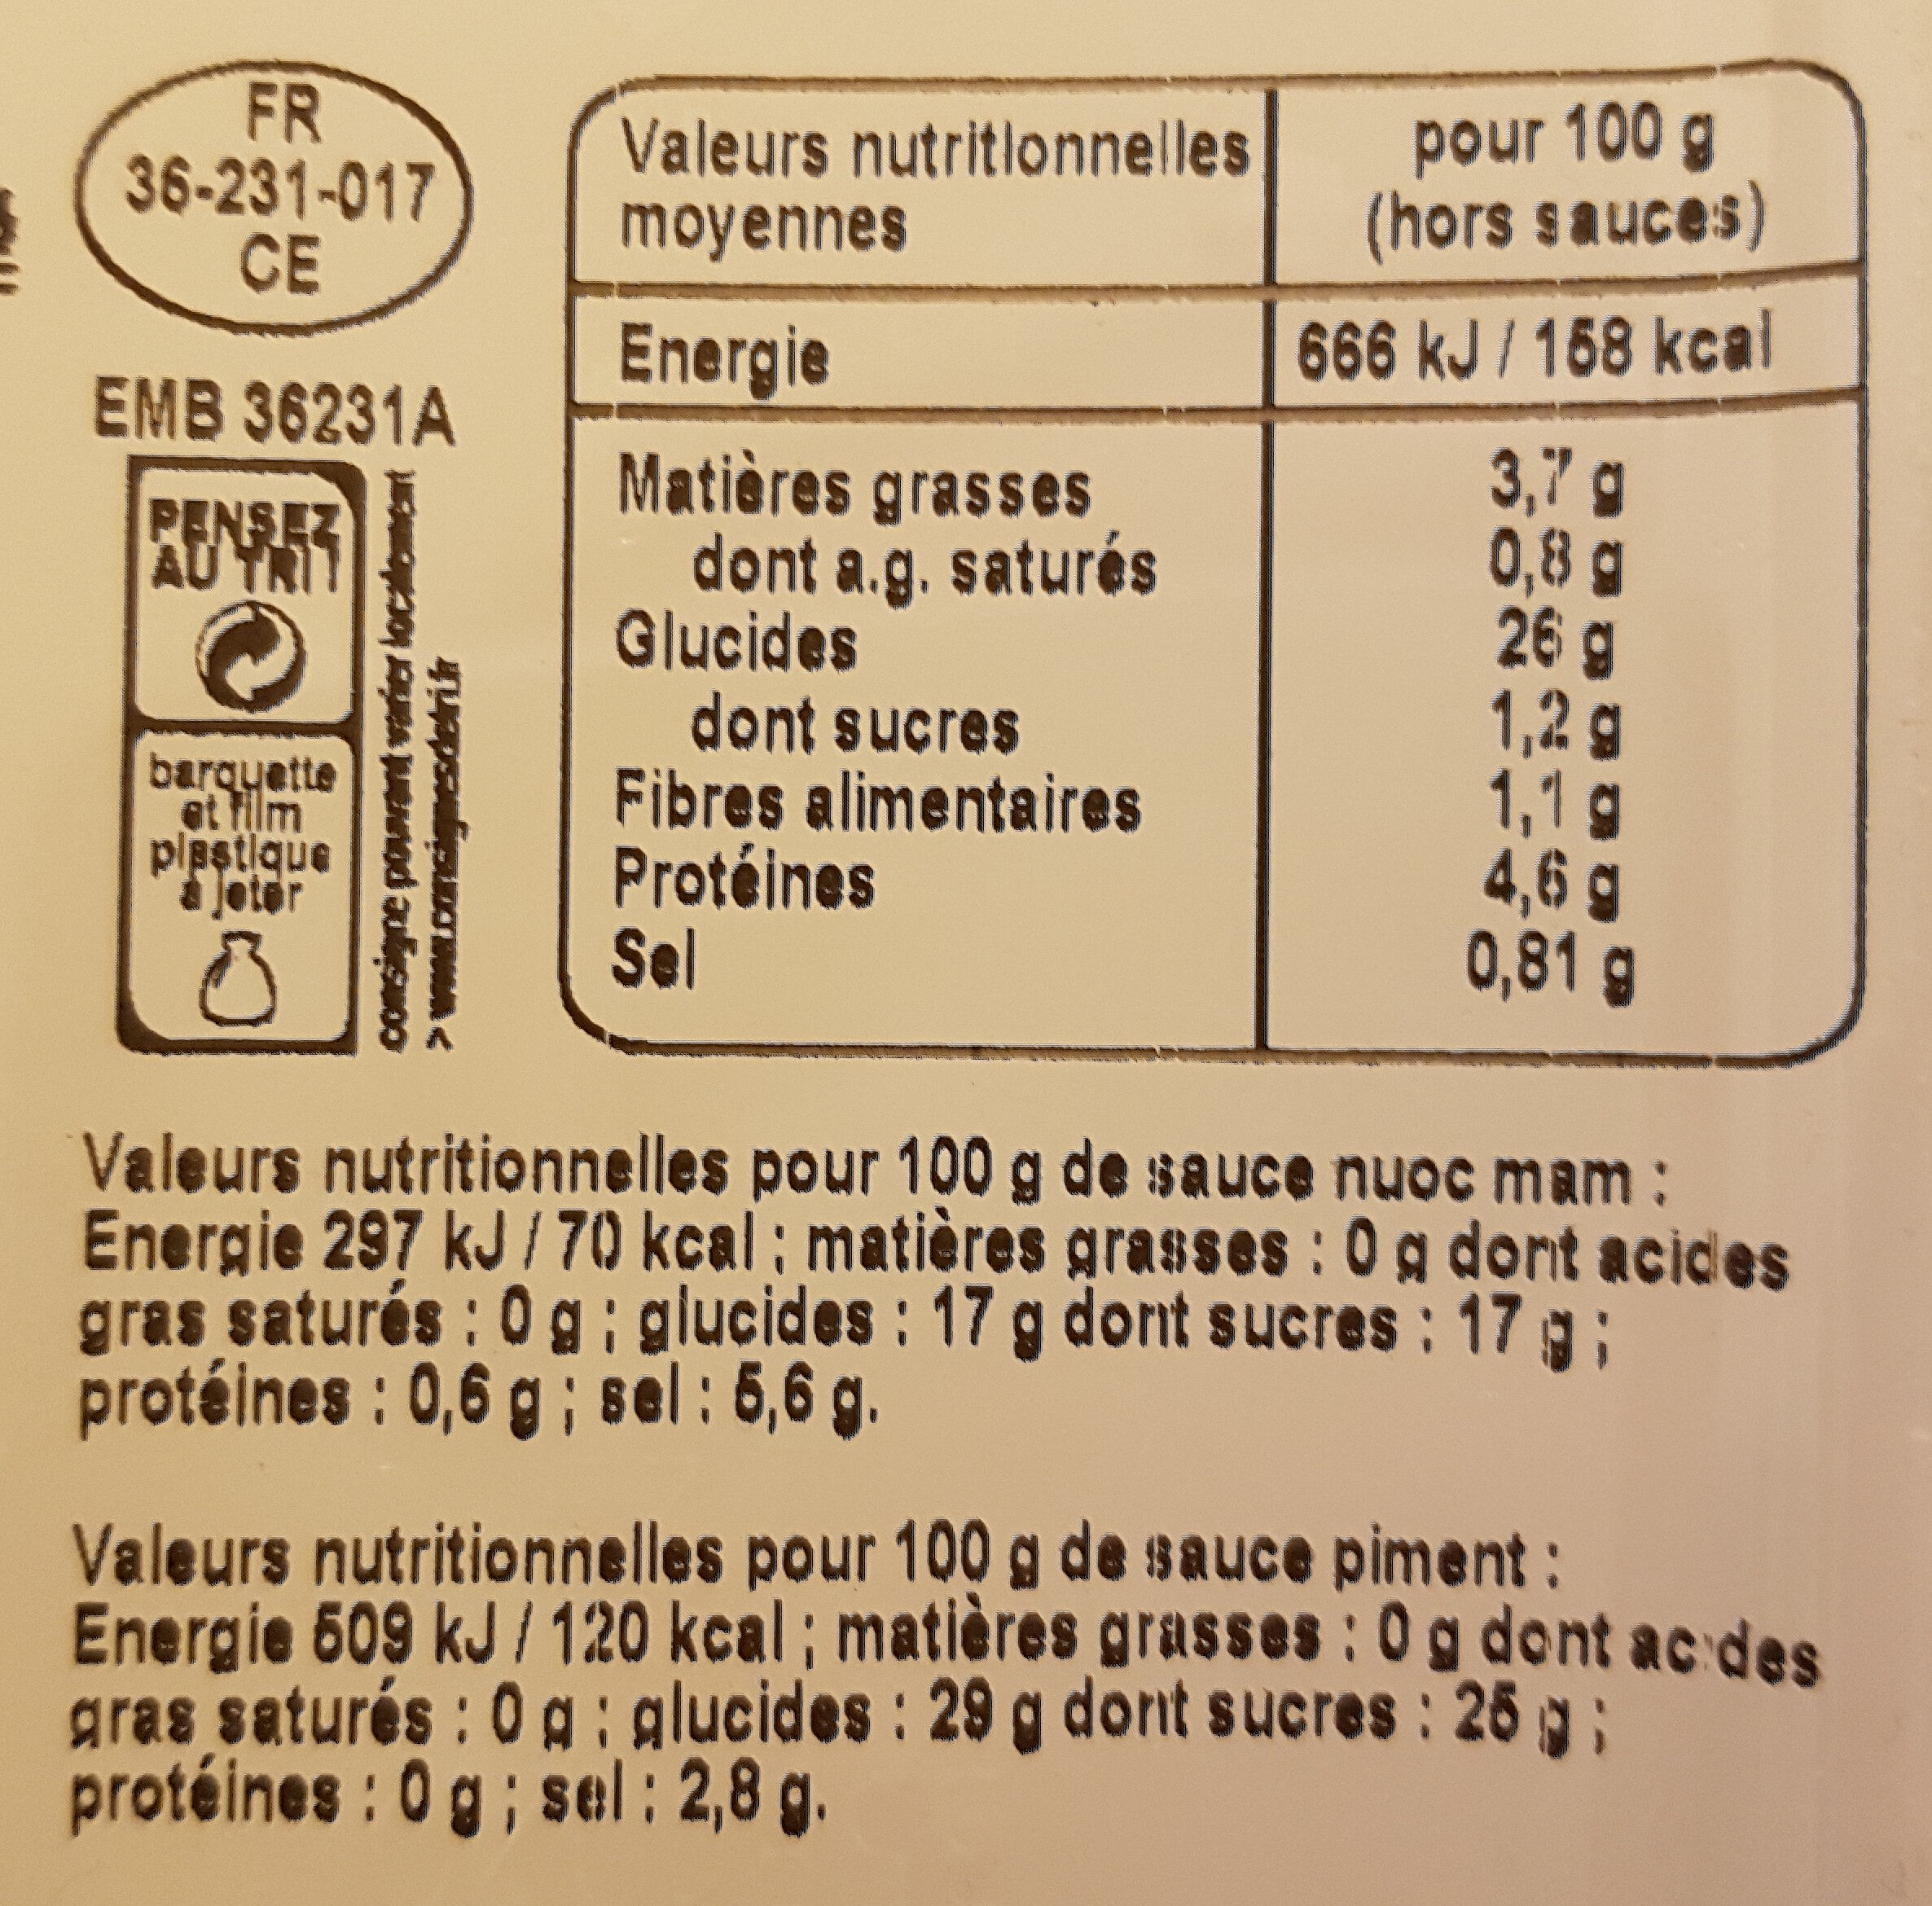 Funko croussants de crevette vapeur avec sauces - Nutrition facts - fr